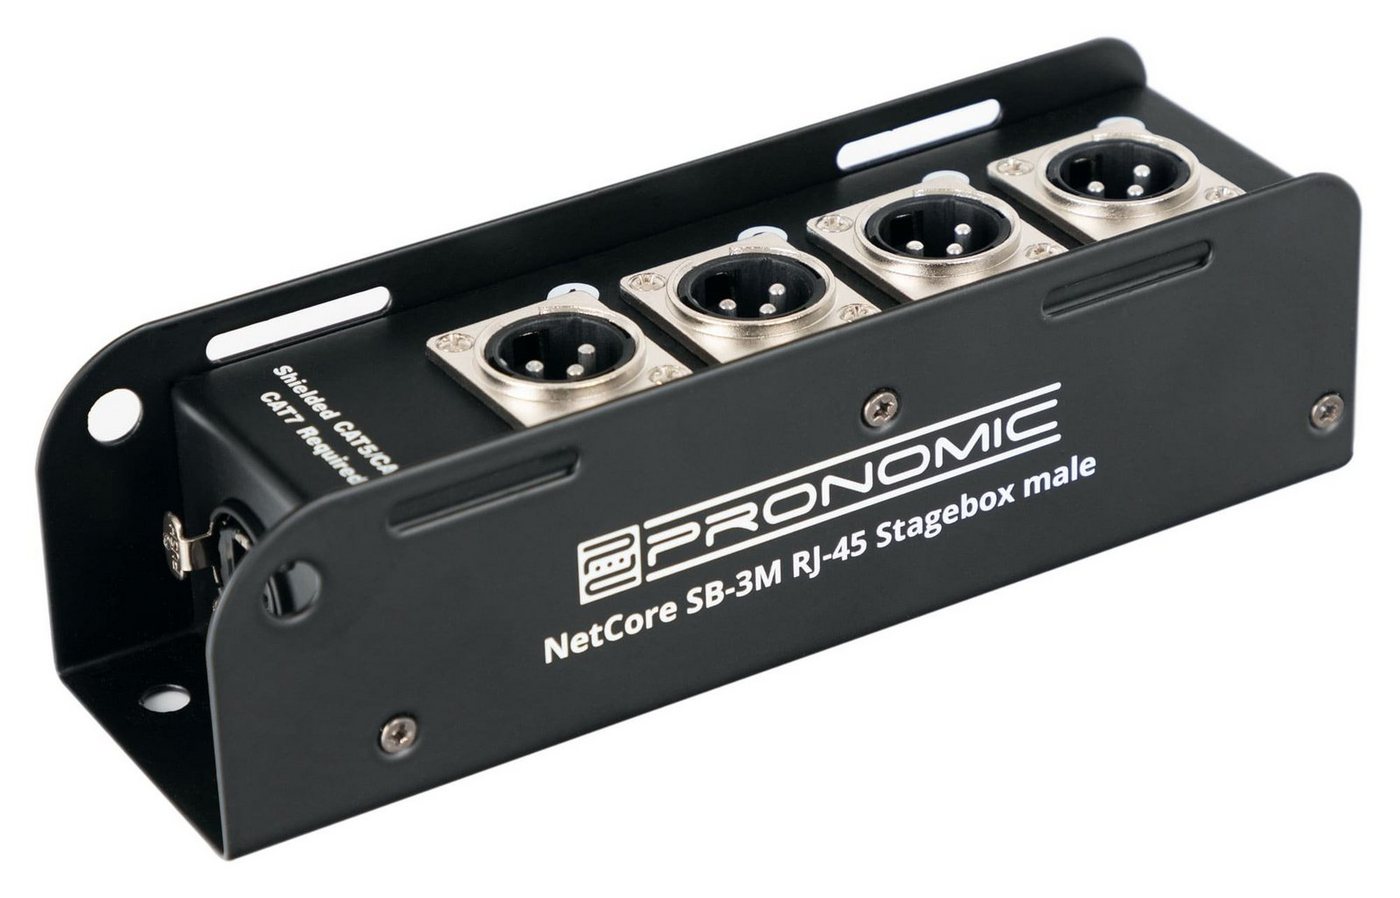 Pronomic NetCore SB-3M Multicore-Stagebox male Audio-Kabel, XLR-Buchsen (male), auf RJ45 Buchse, zur Übertragung analoger oder digitaler Signale von Pronomic